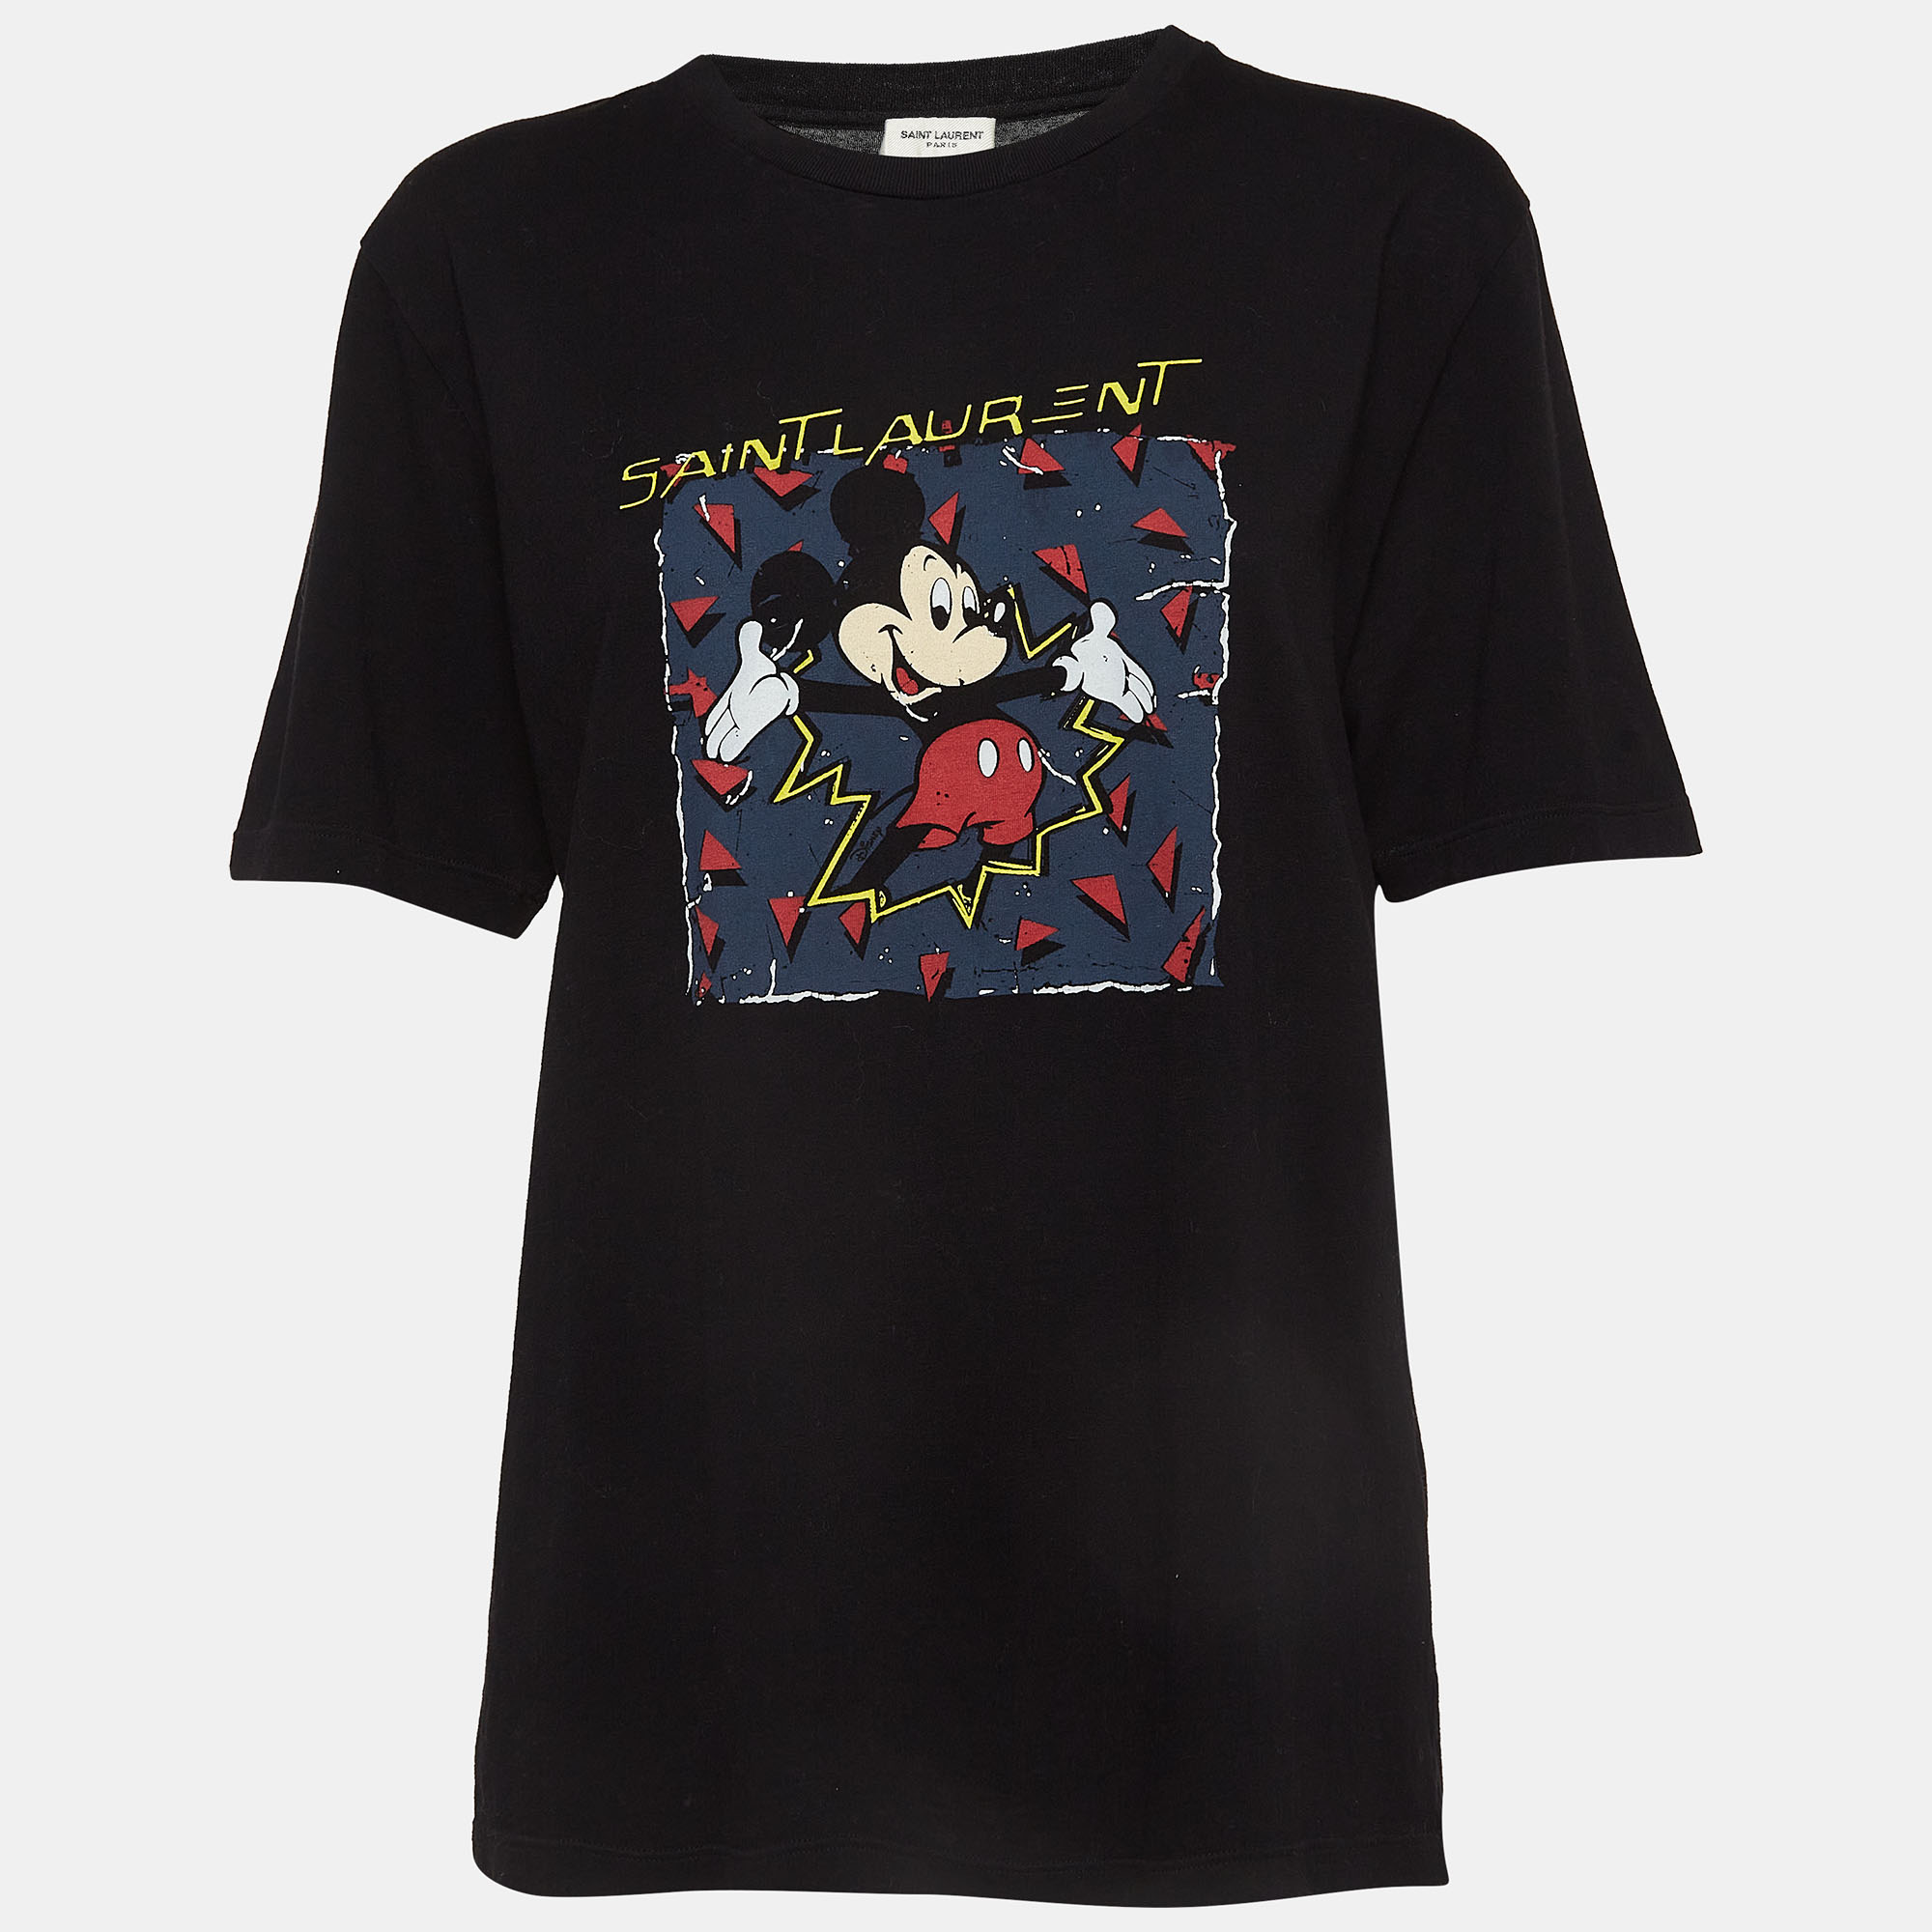 

Saint Laurent Paris x Disney Black Mickey Mouse Print Cotton Knit Tshirt